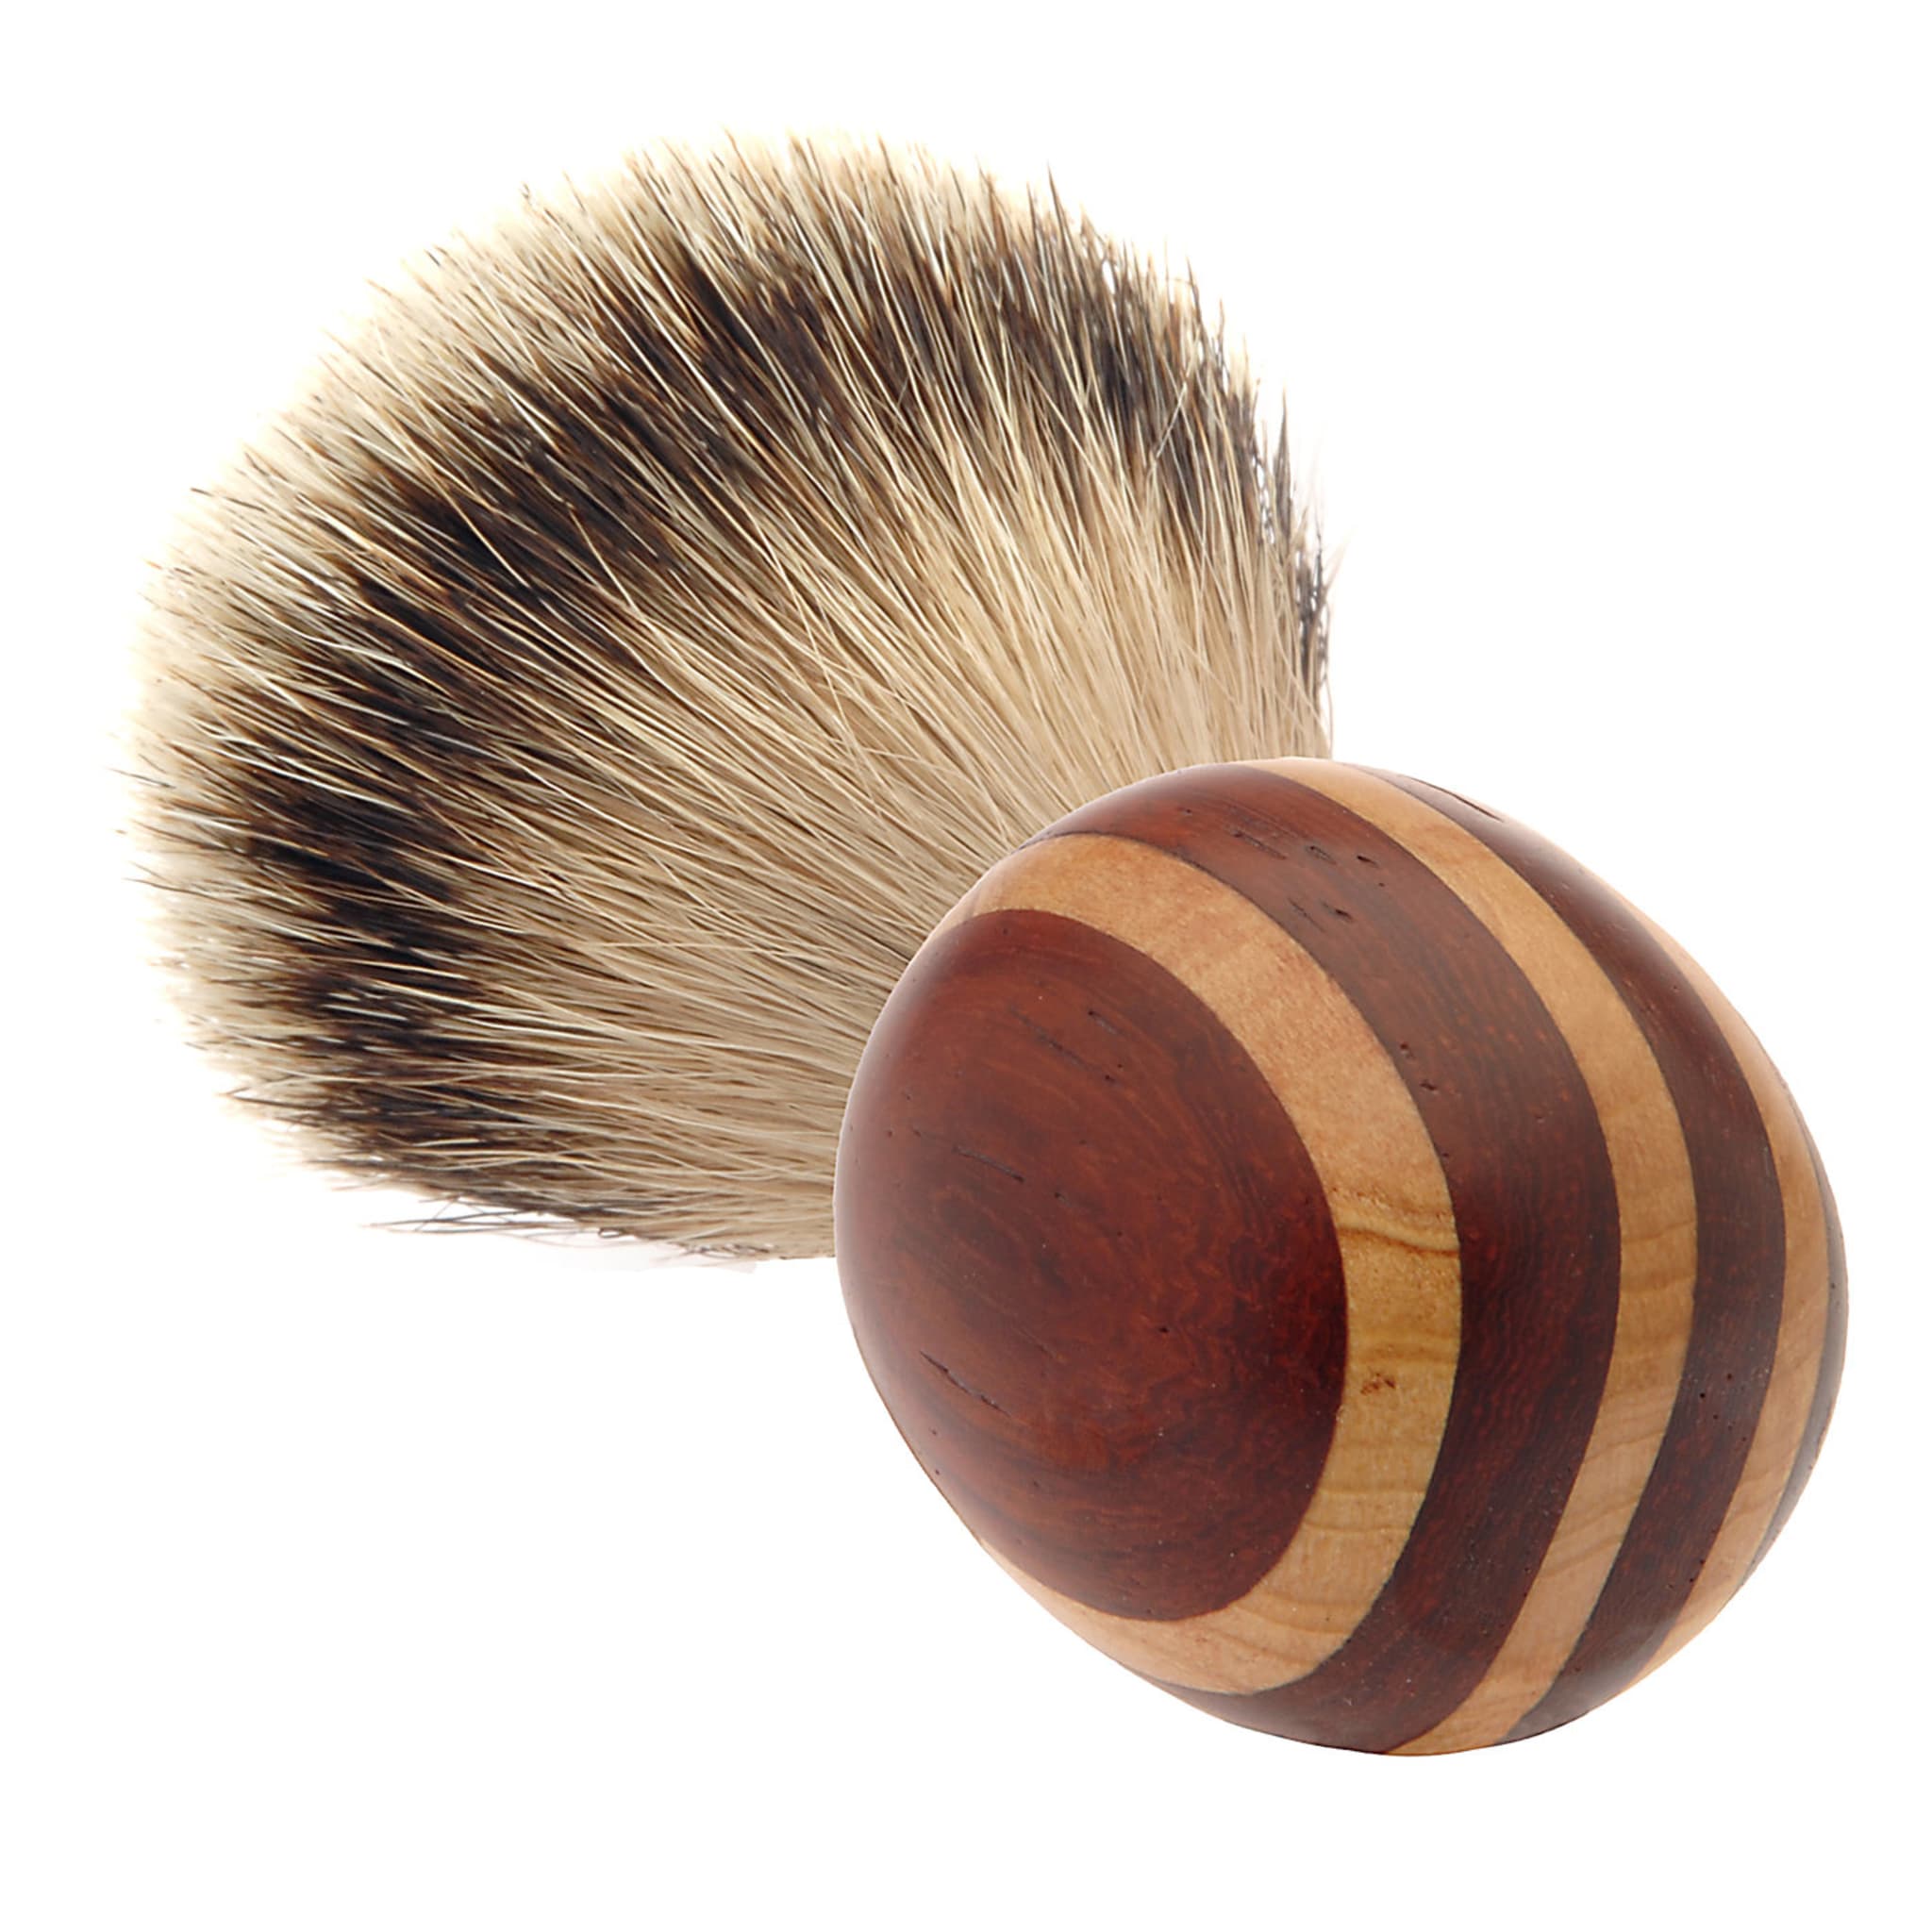 Short Shaving Brush in Maple and Padauk Wood - Alternative view 3